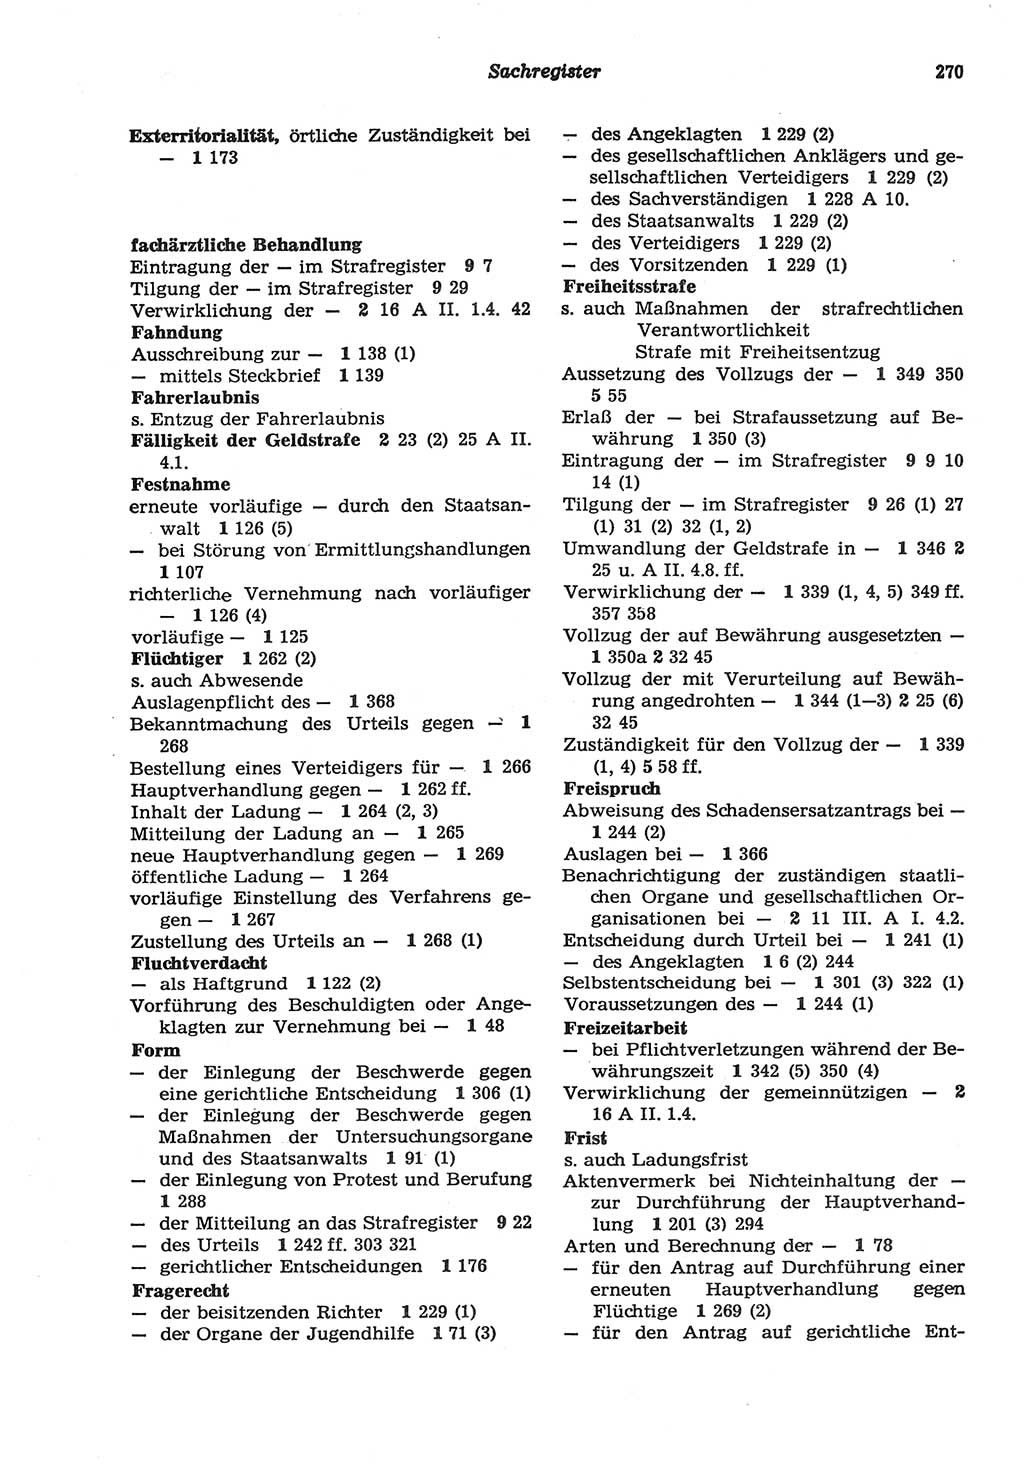 Strafprozeßordnung (StPO) der Deutschen Demokratischen Republik (DDR) sowie angrenzende Gesetze und Bestimmungen 1977, Seite 270 (StPO DDR Ges. Best. 1977, S. 270)